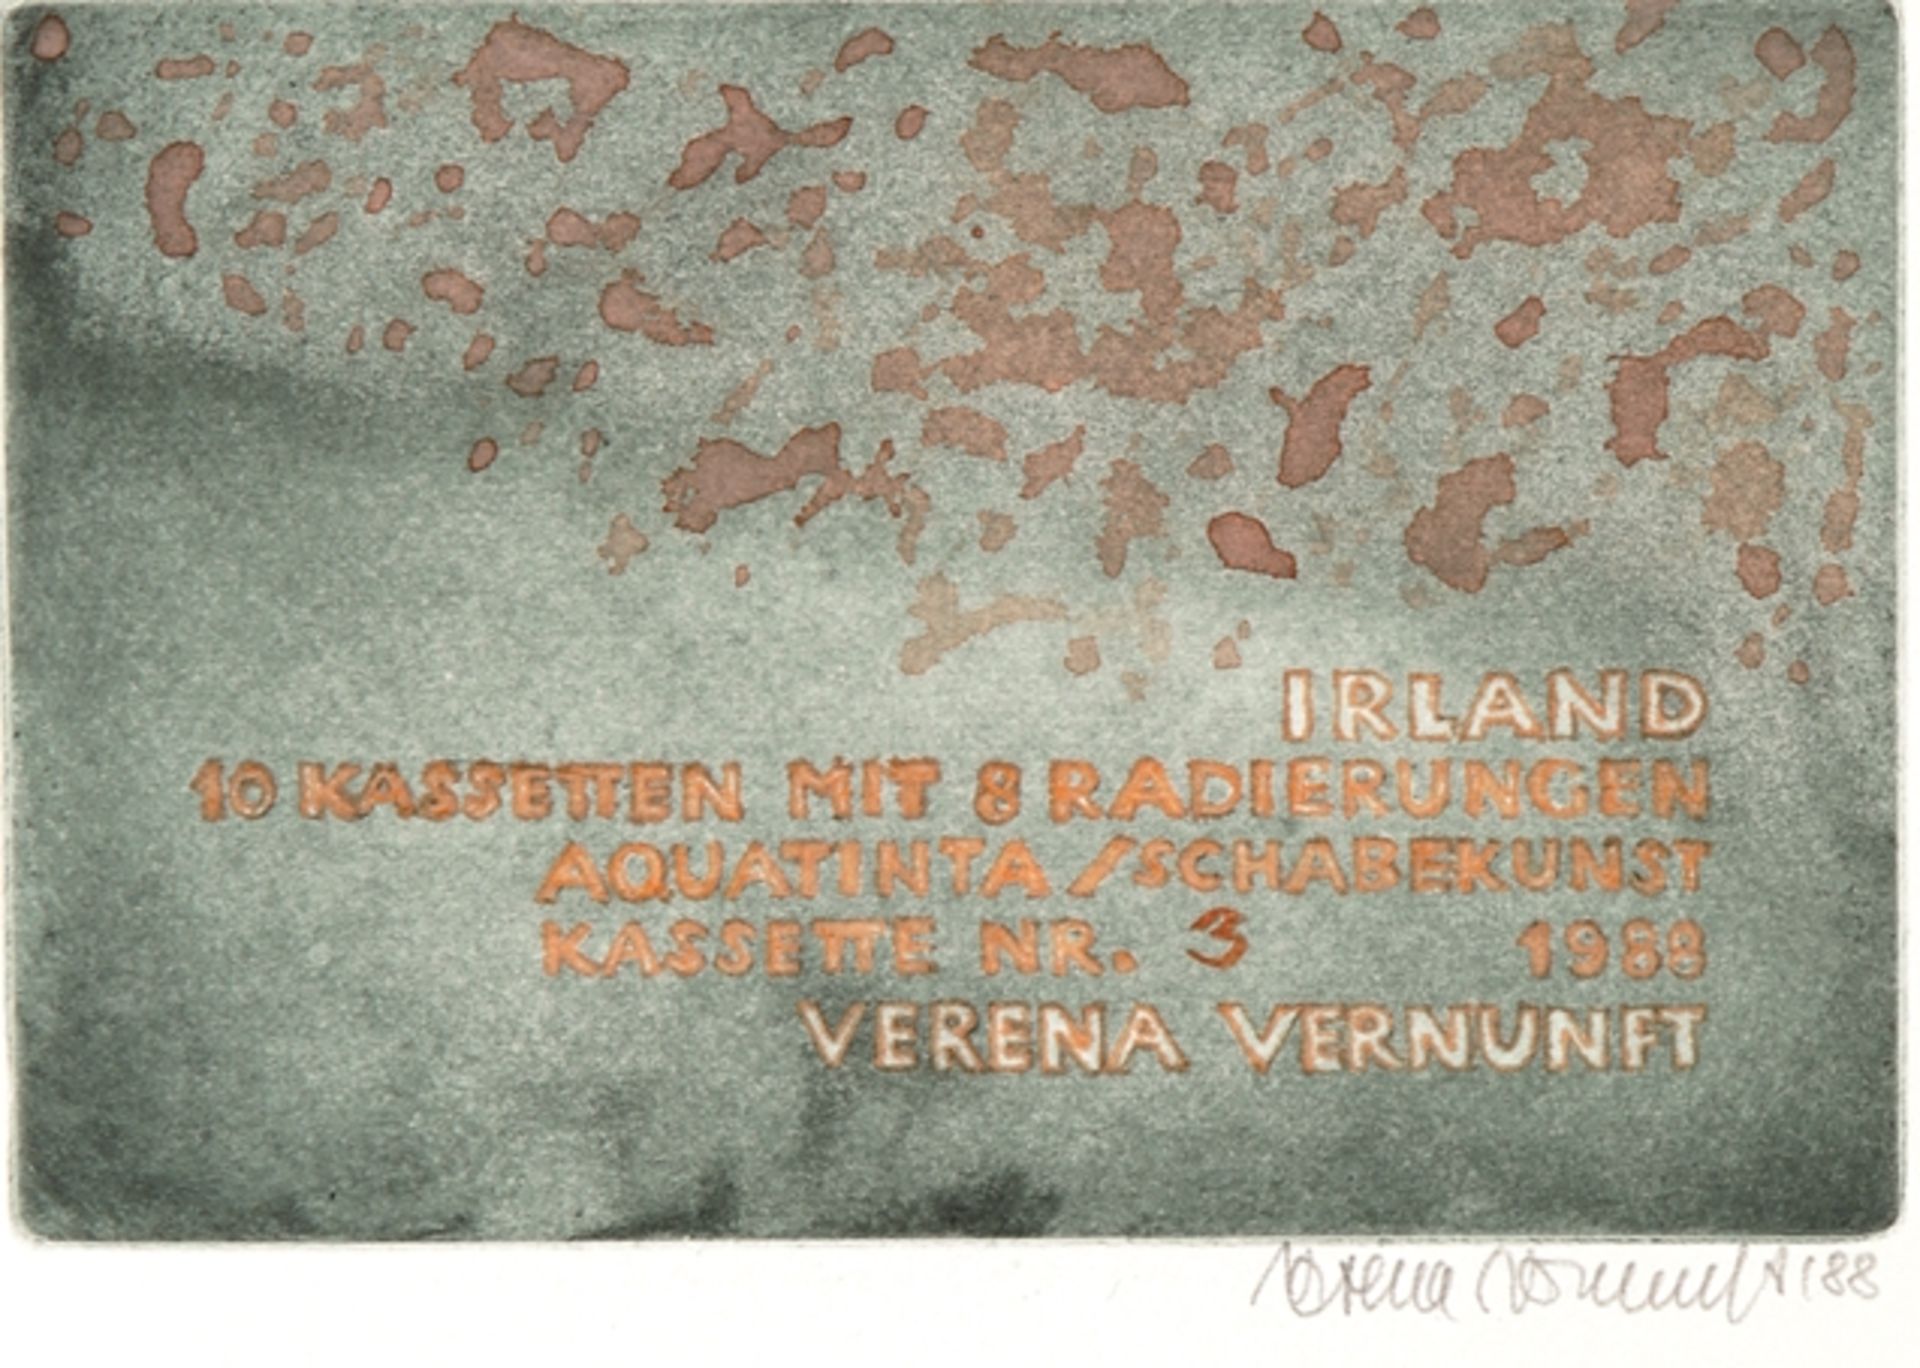 Vernunft, Verena - Image 4 of 5